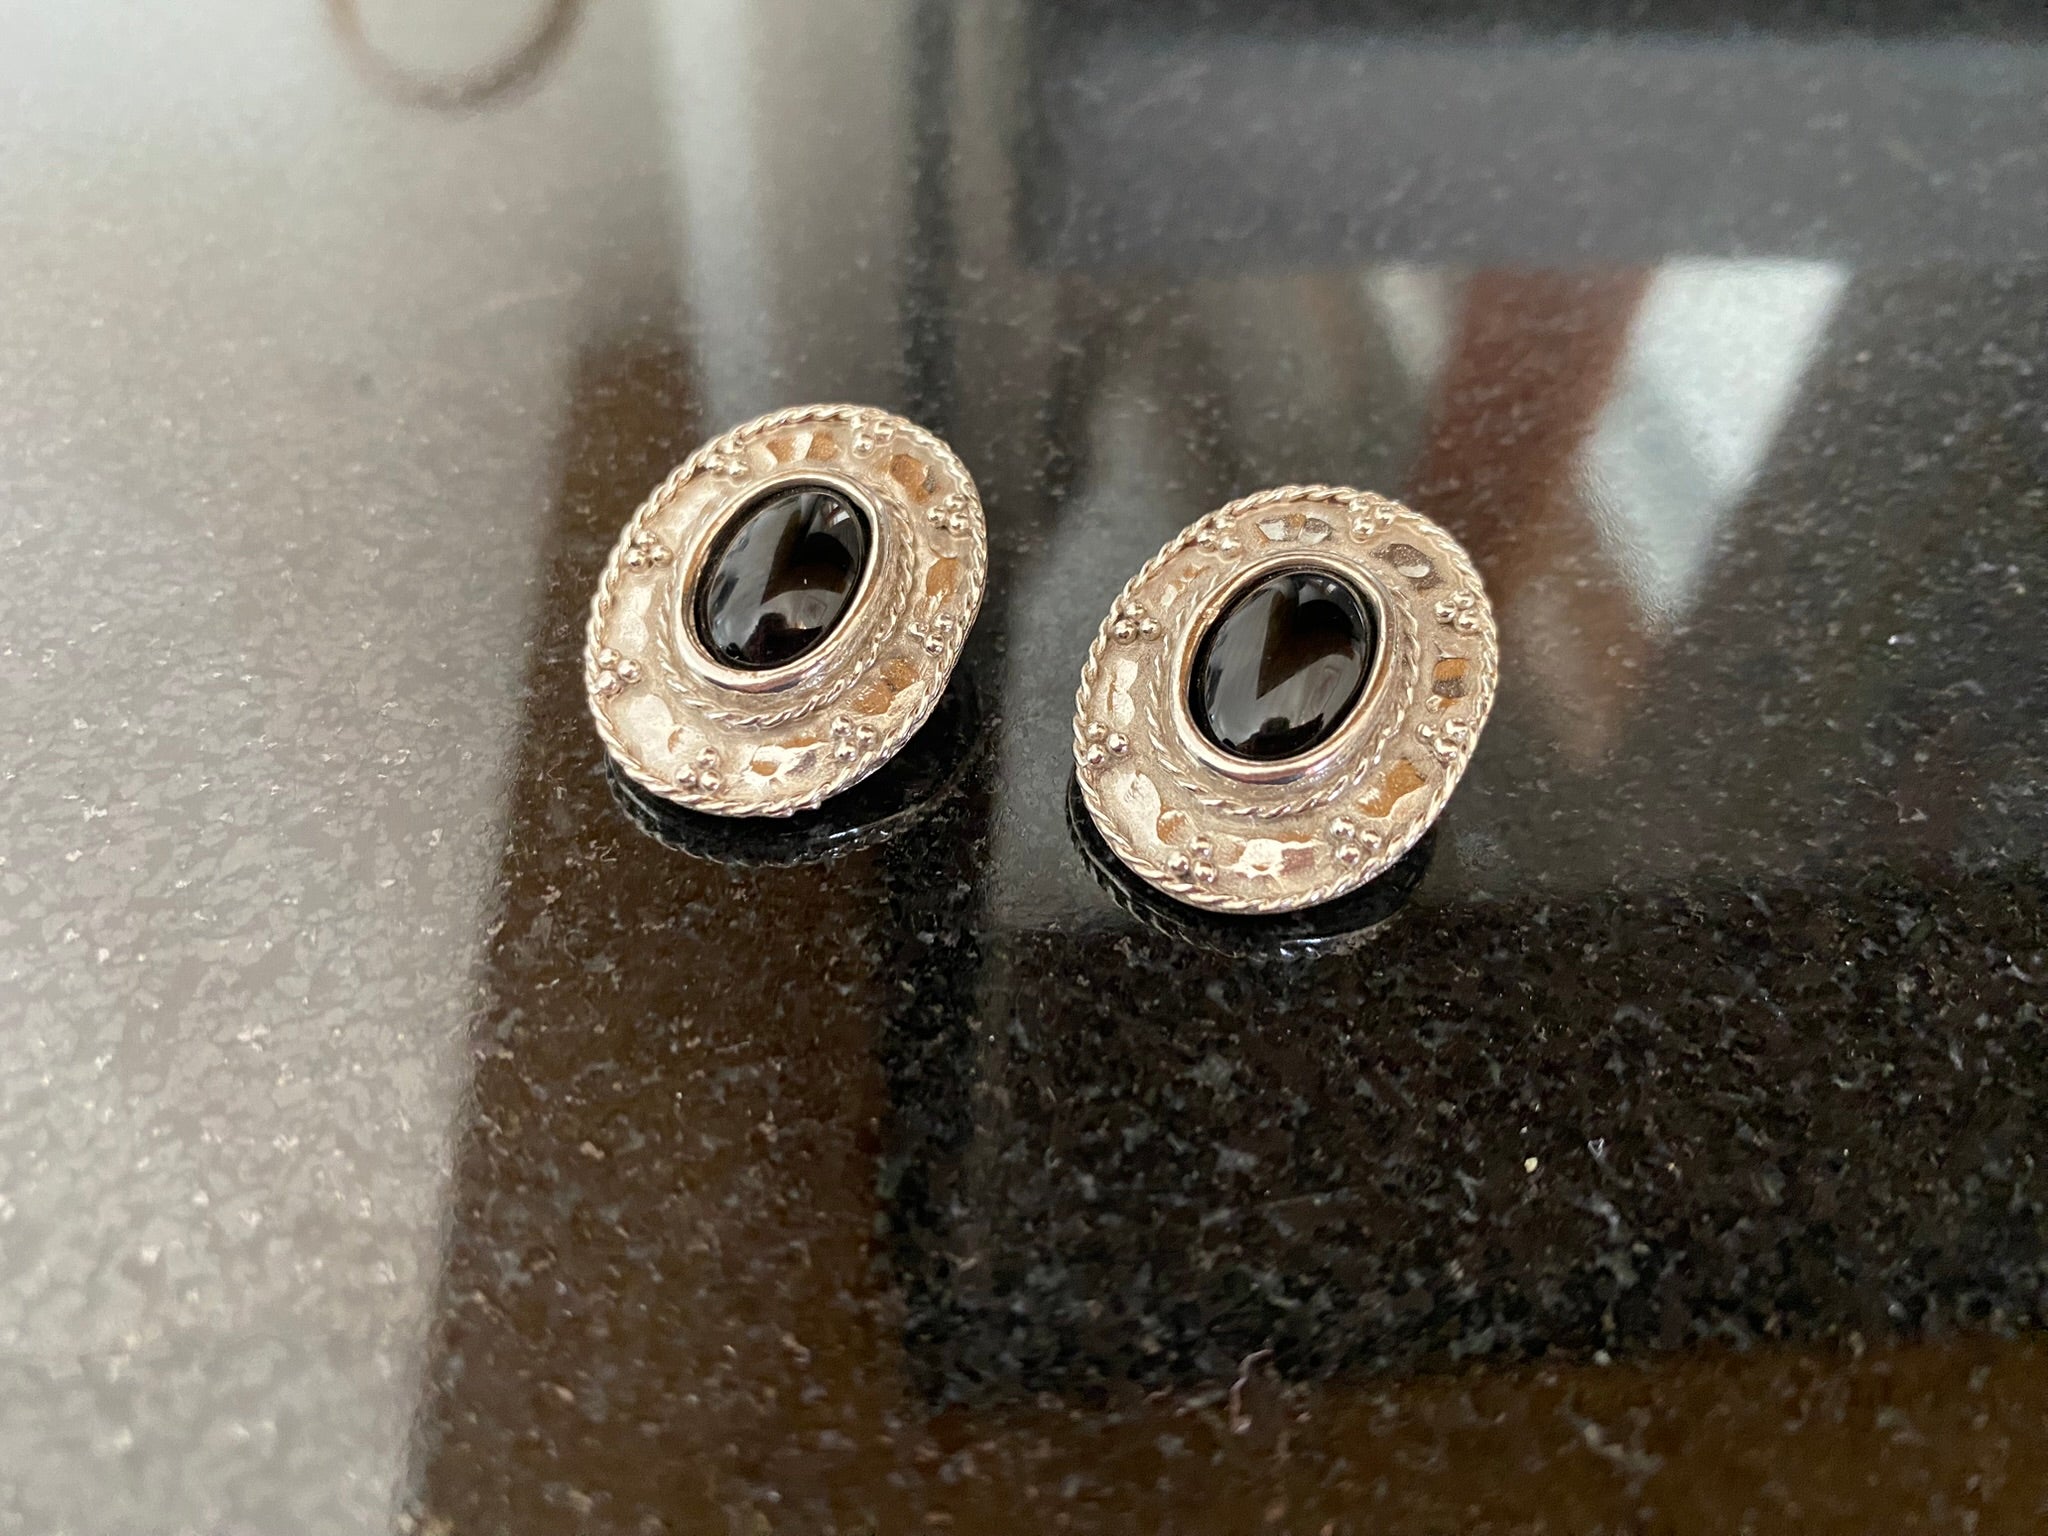 Greek Oval Earrings in Sterling silver with Gemstone (GT-02)